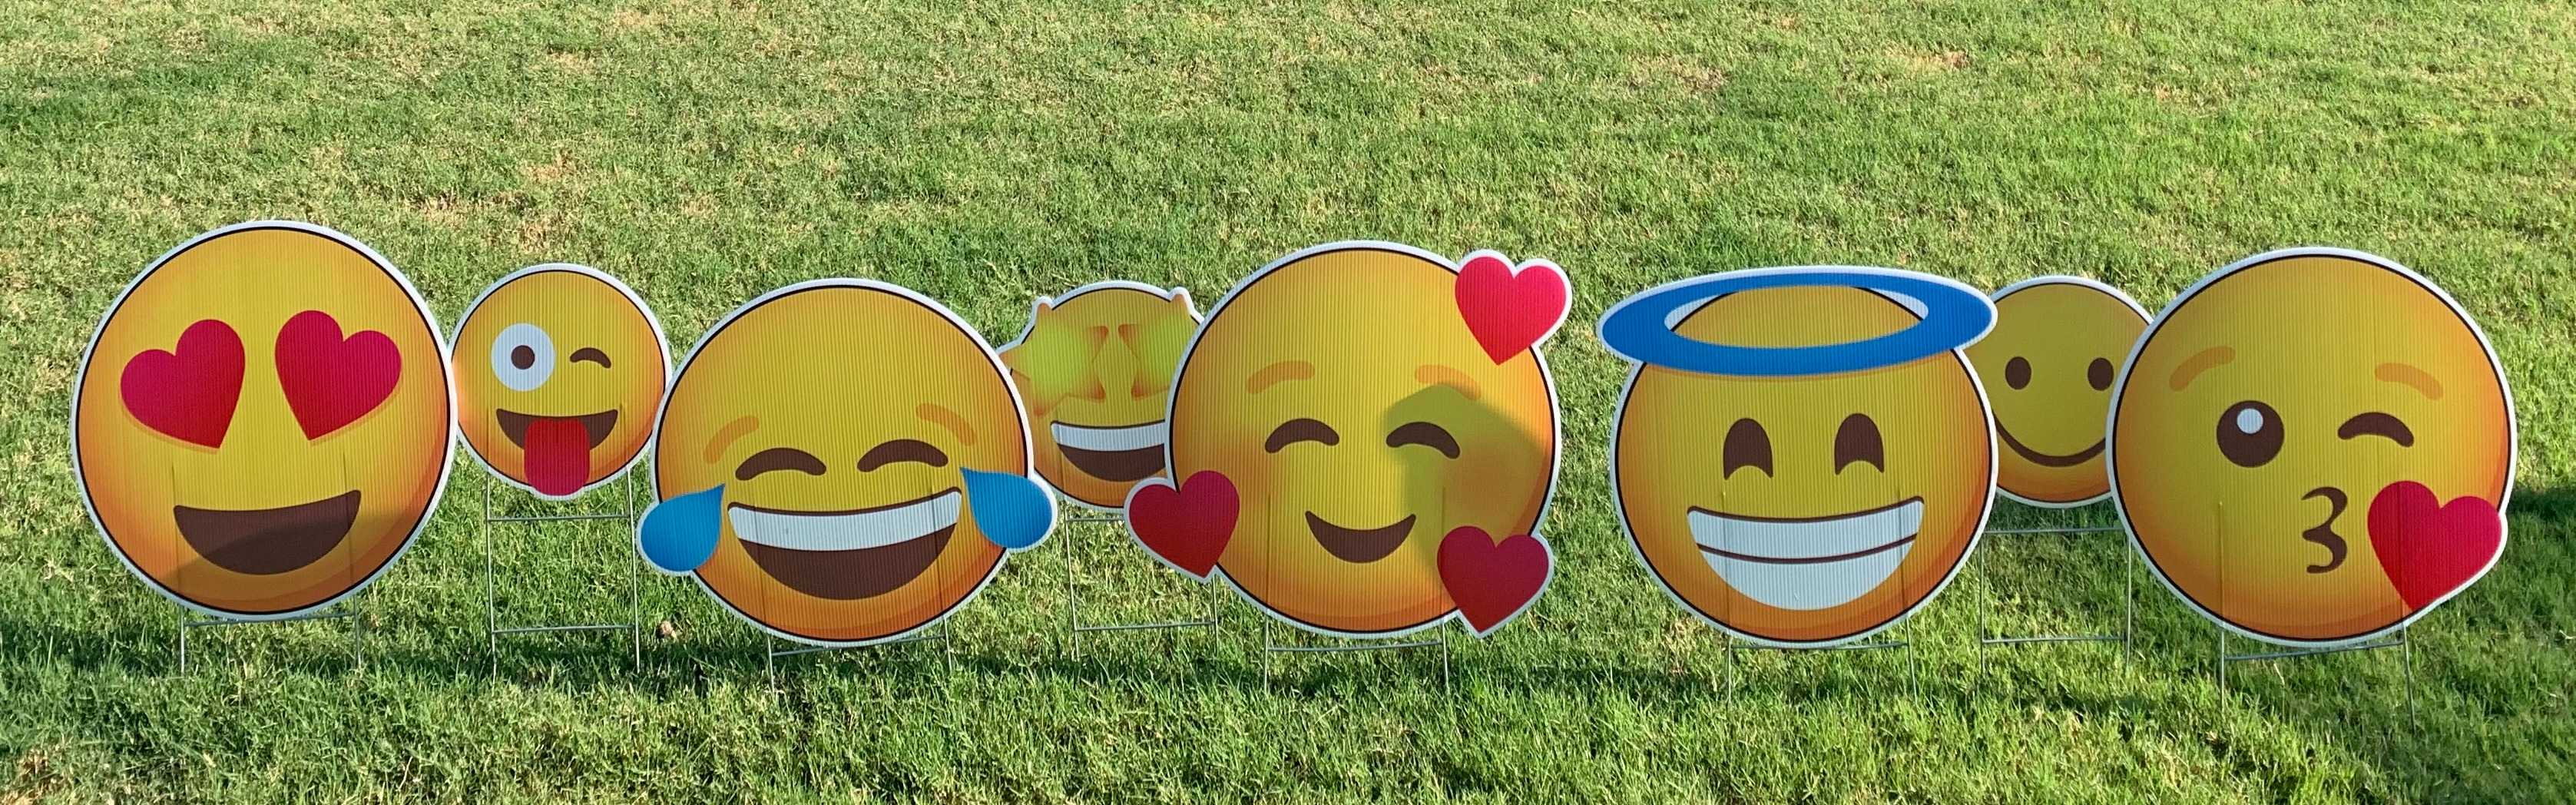 Yard card sign collection emoji 